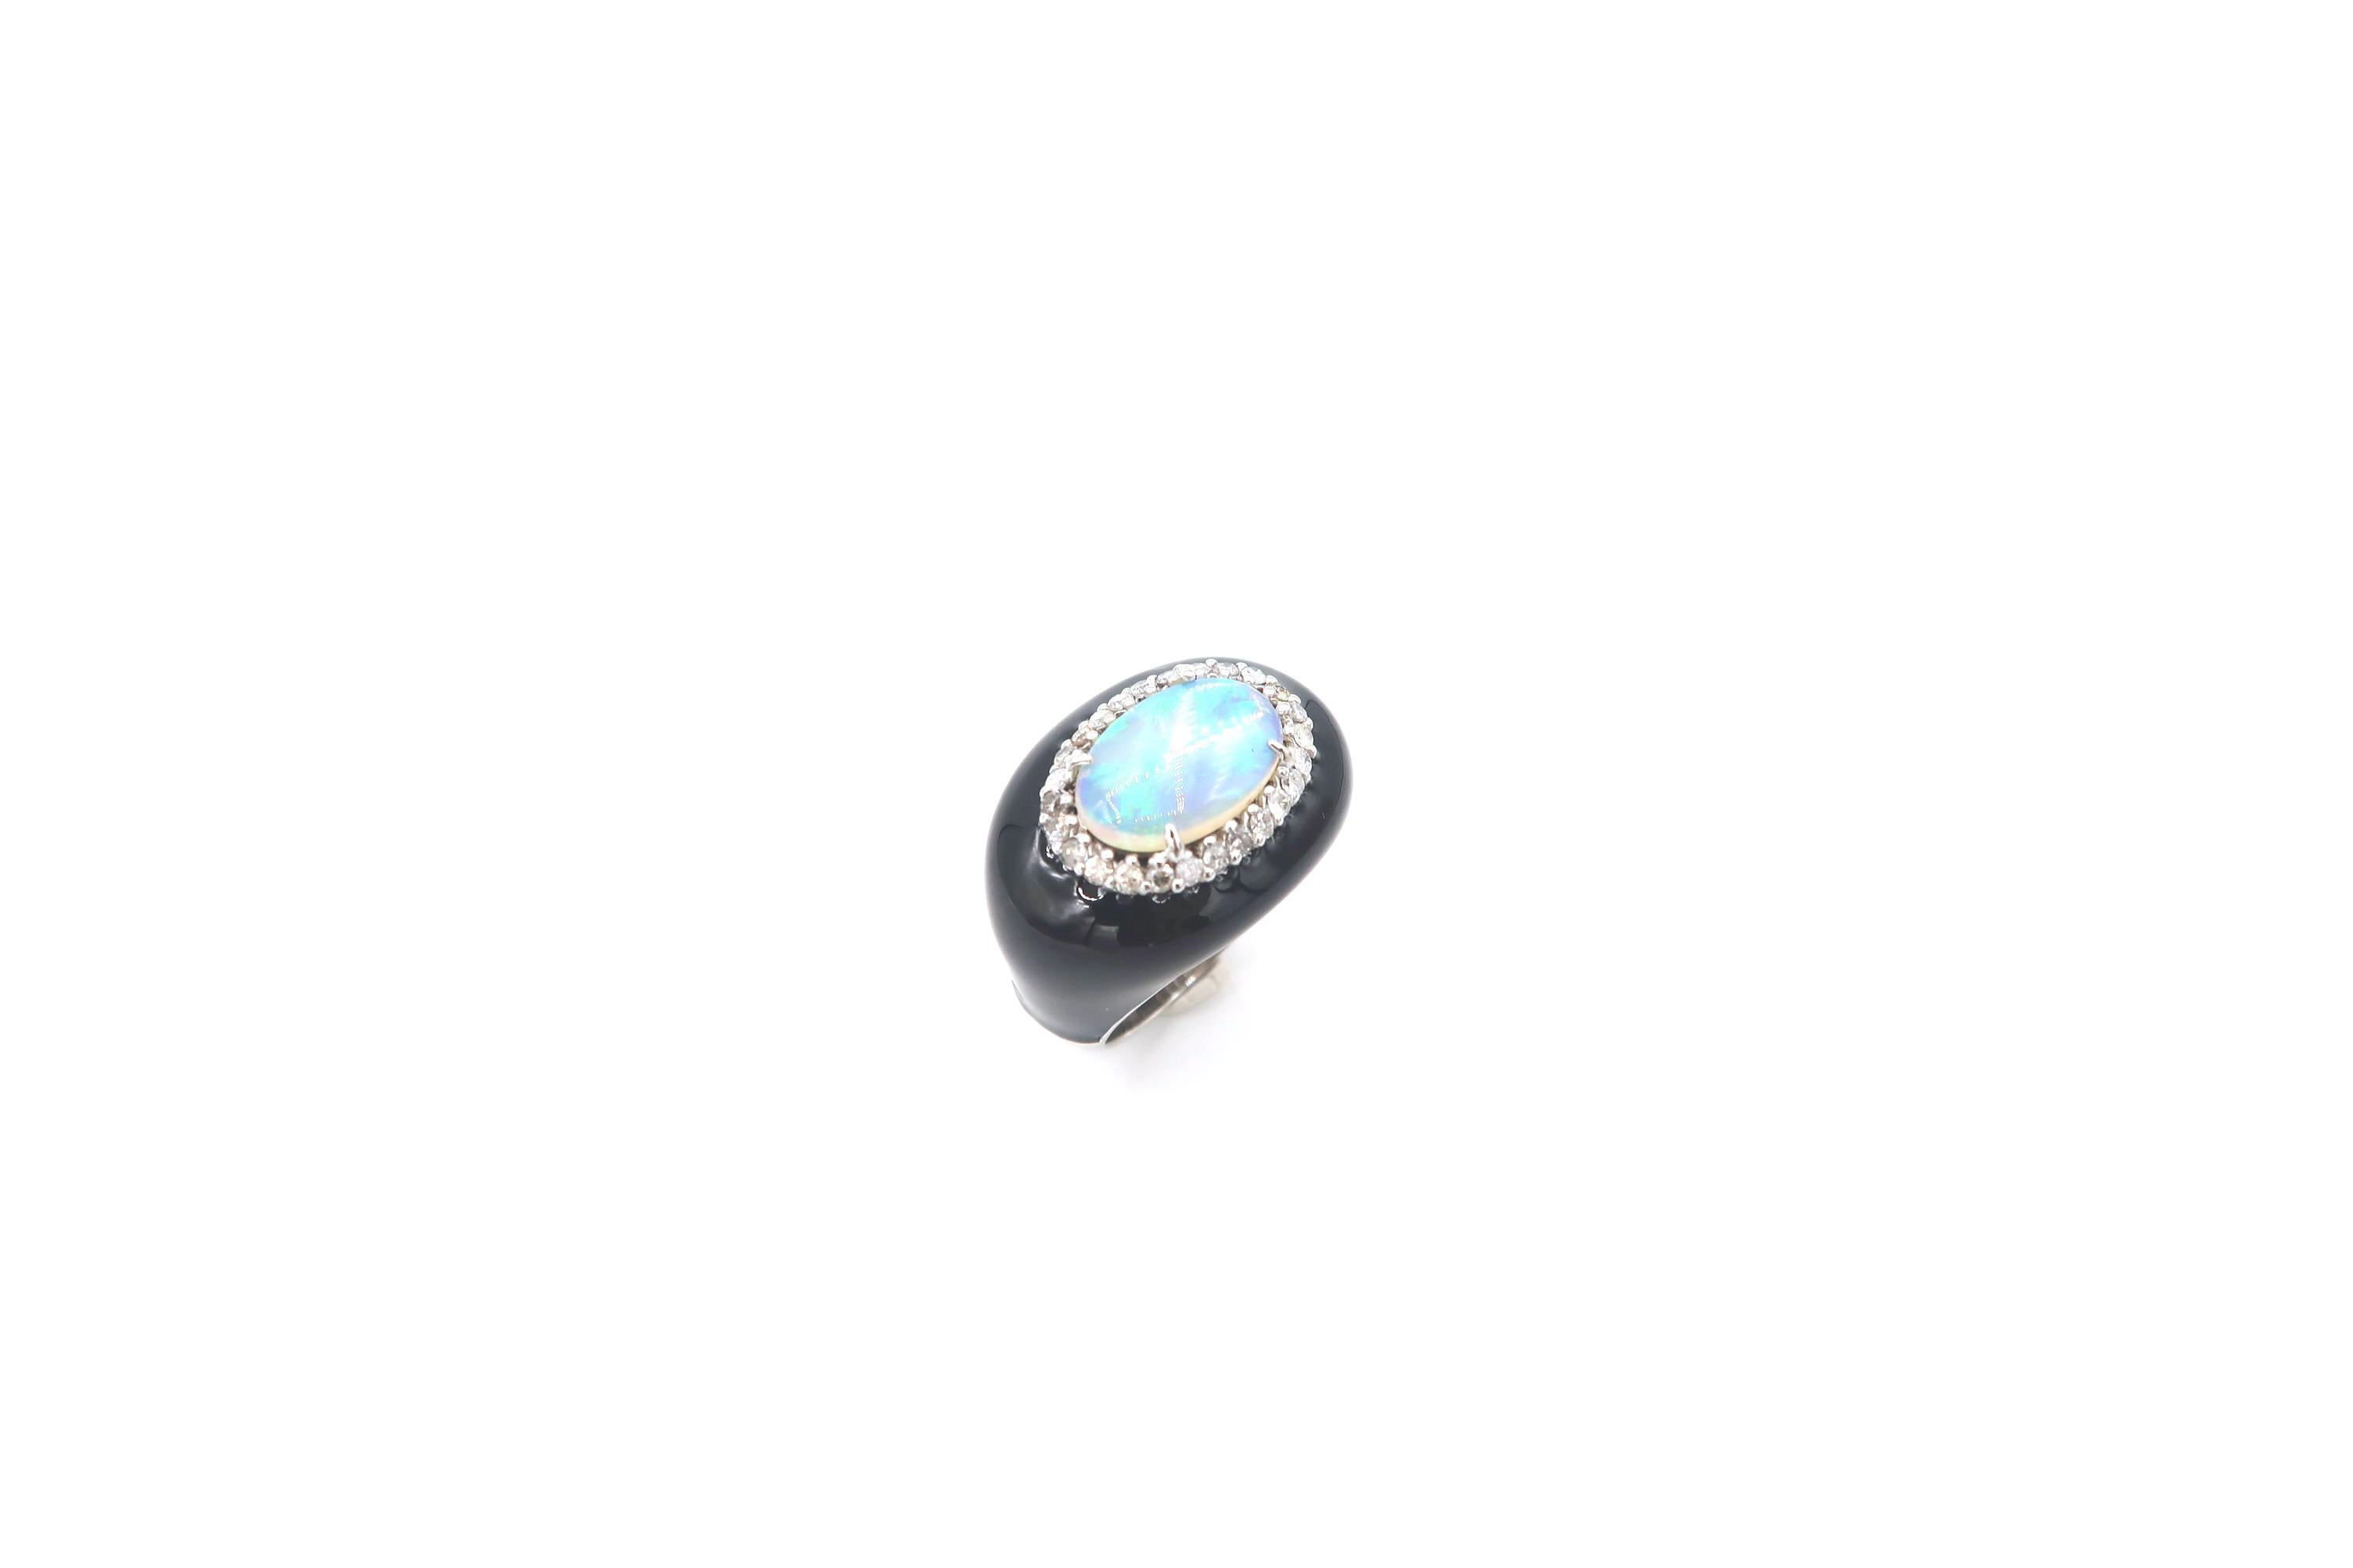 1.75 carat oval diamond ring